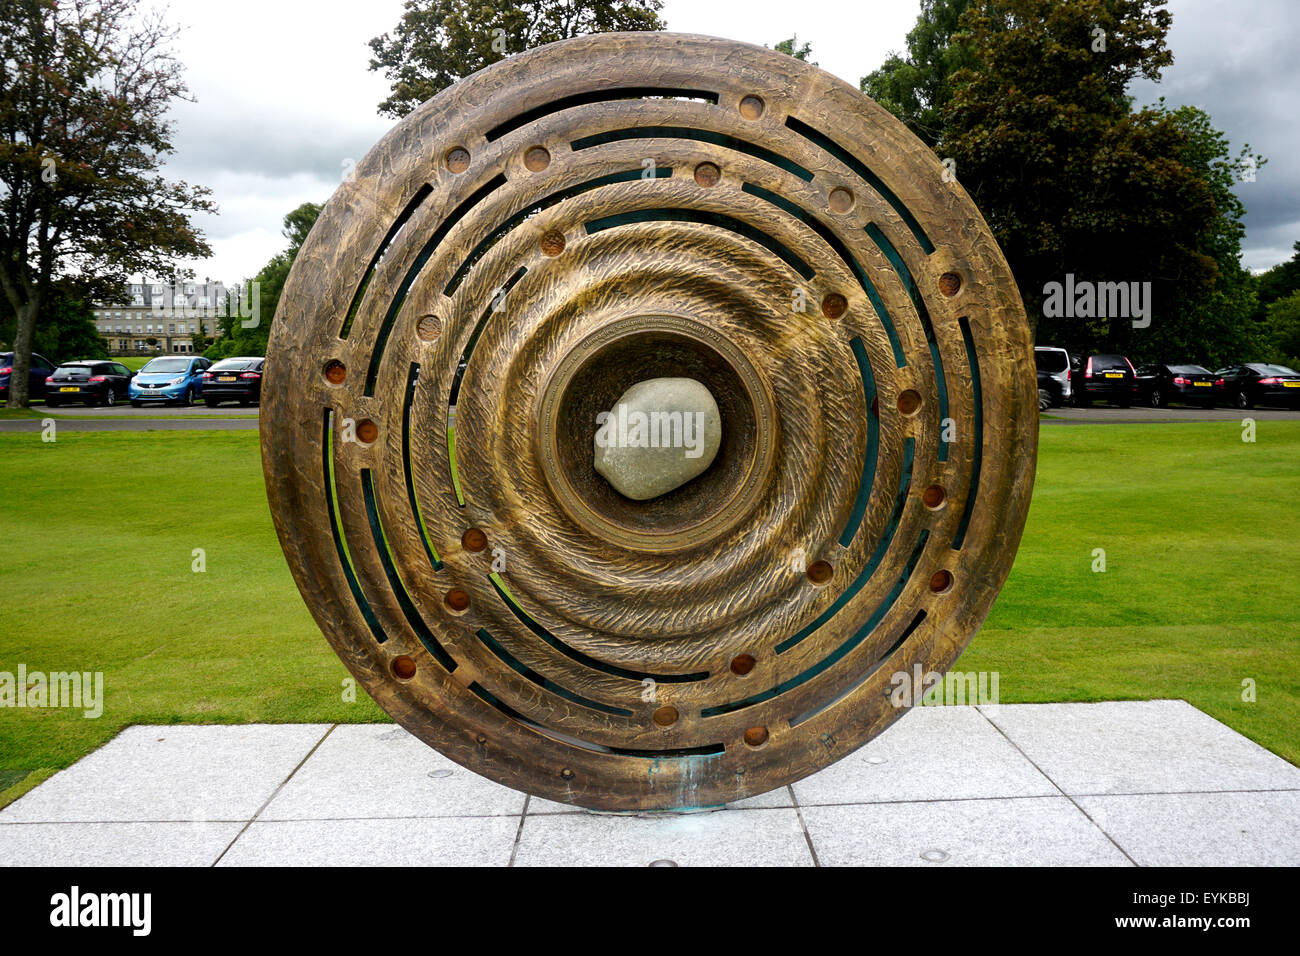 Il recentemente installata a 2 metri di altezza in bronzo commemorativo round roundel scultura che commemora l'hosting del 2014 Ryder Cup. Foto Stock